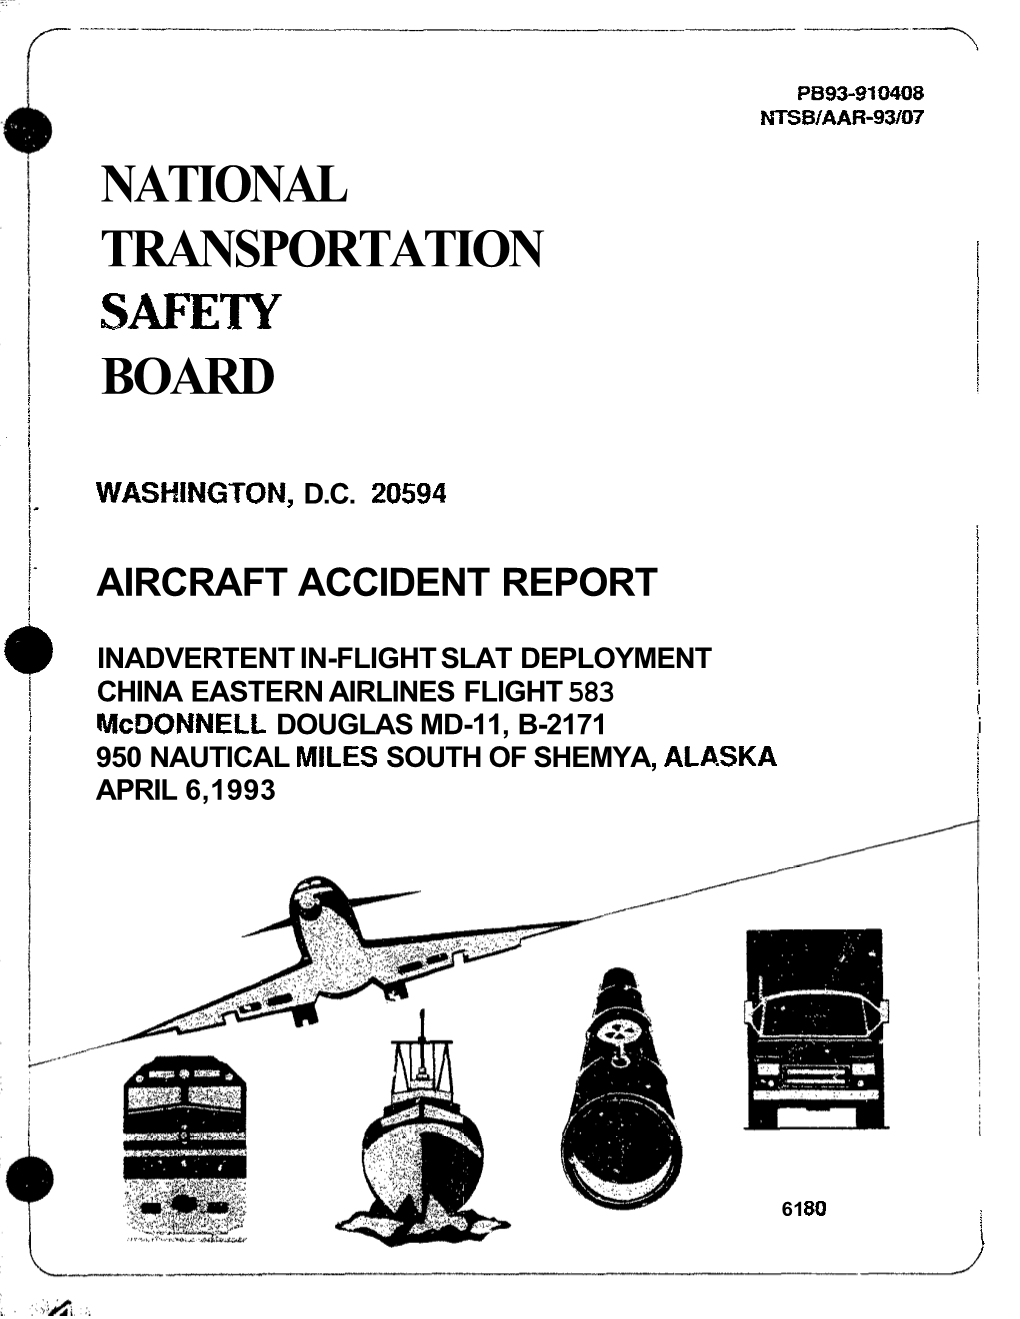 MD-11, B-2171 I I 950 NAUTICAL MILES SOUTH of SHEMYA, ALA.SKA I APRIL 6,1993 I